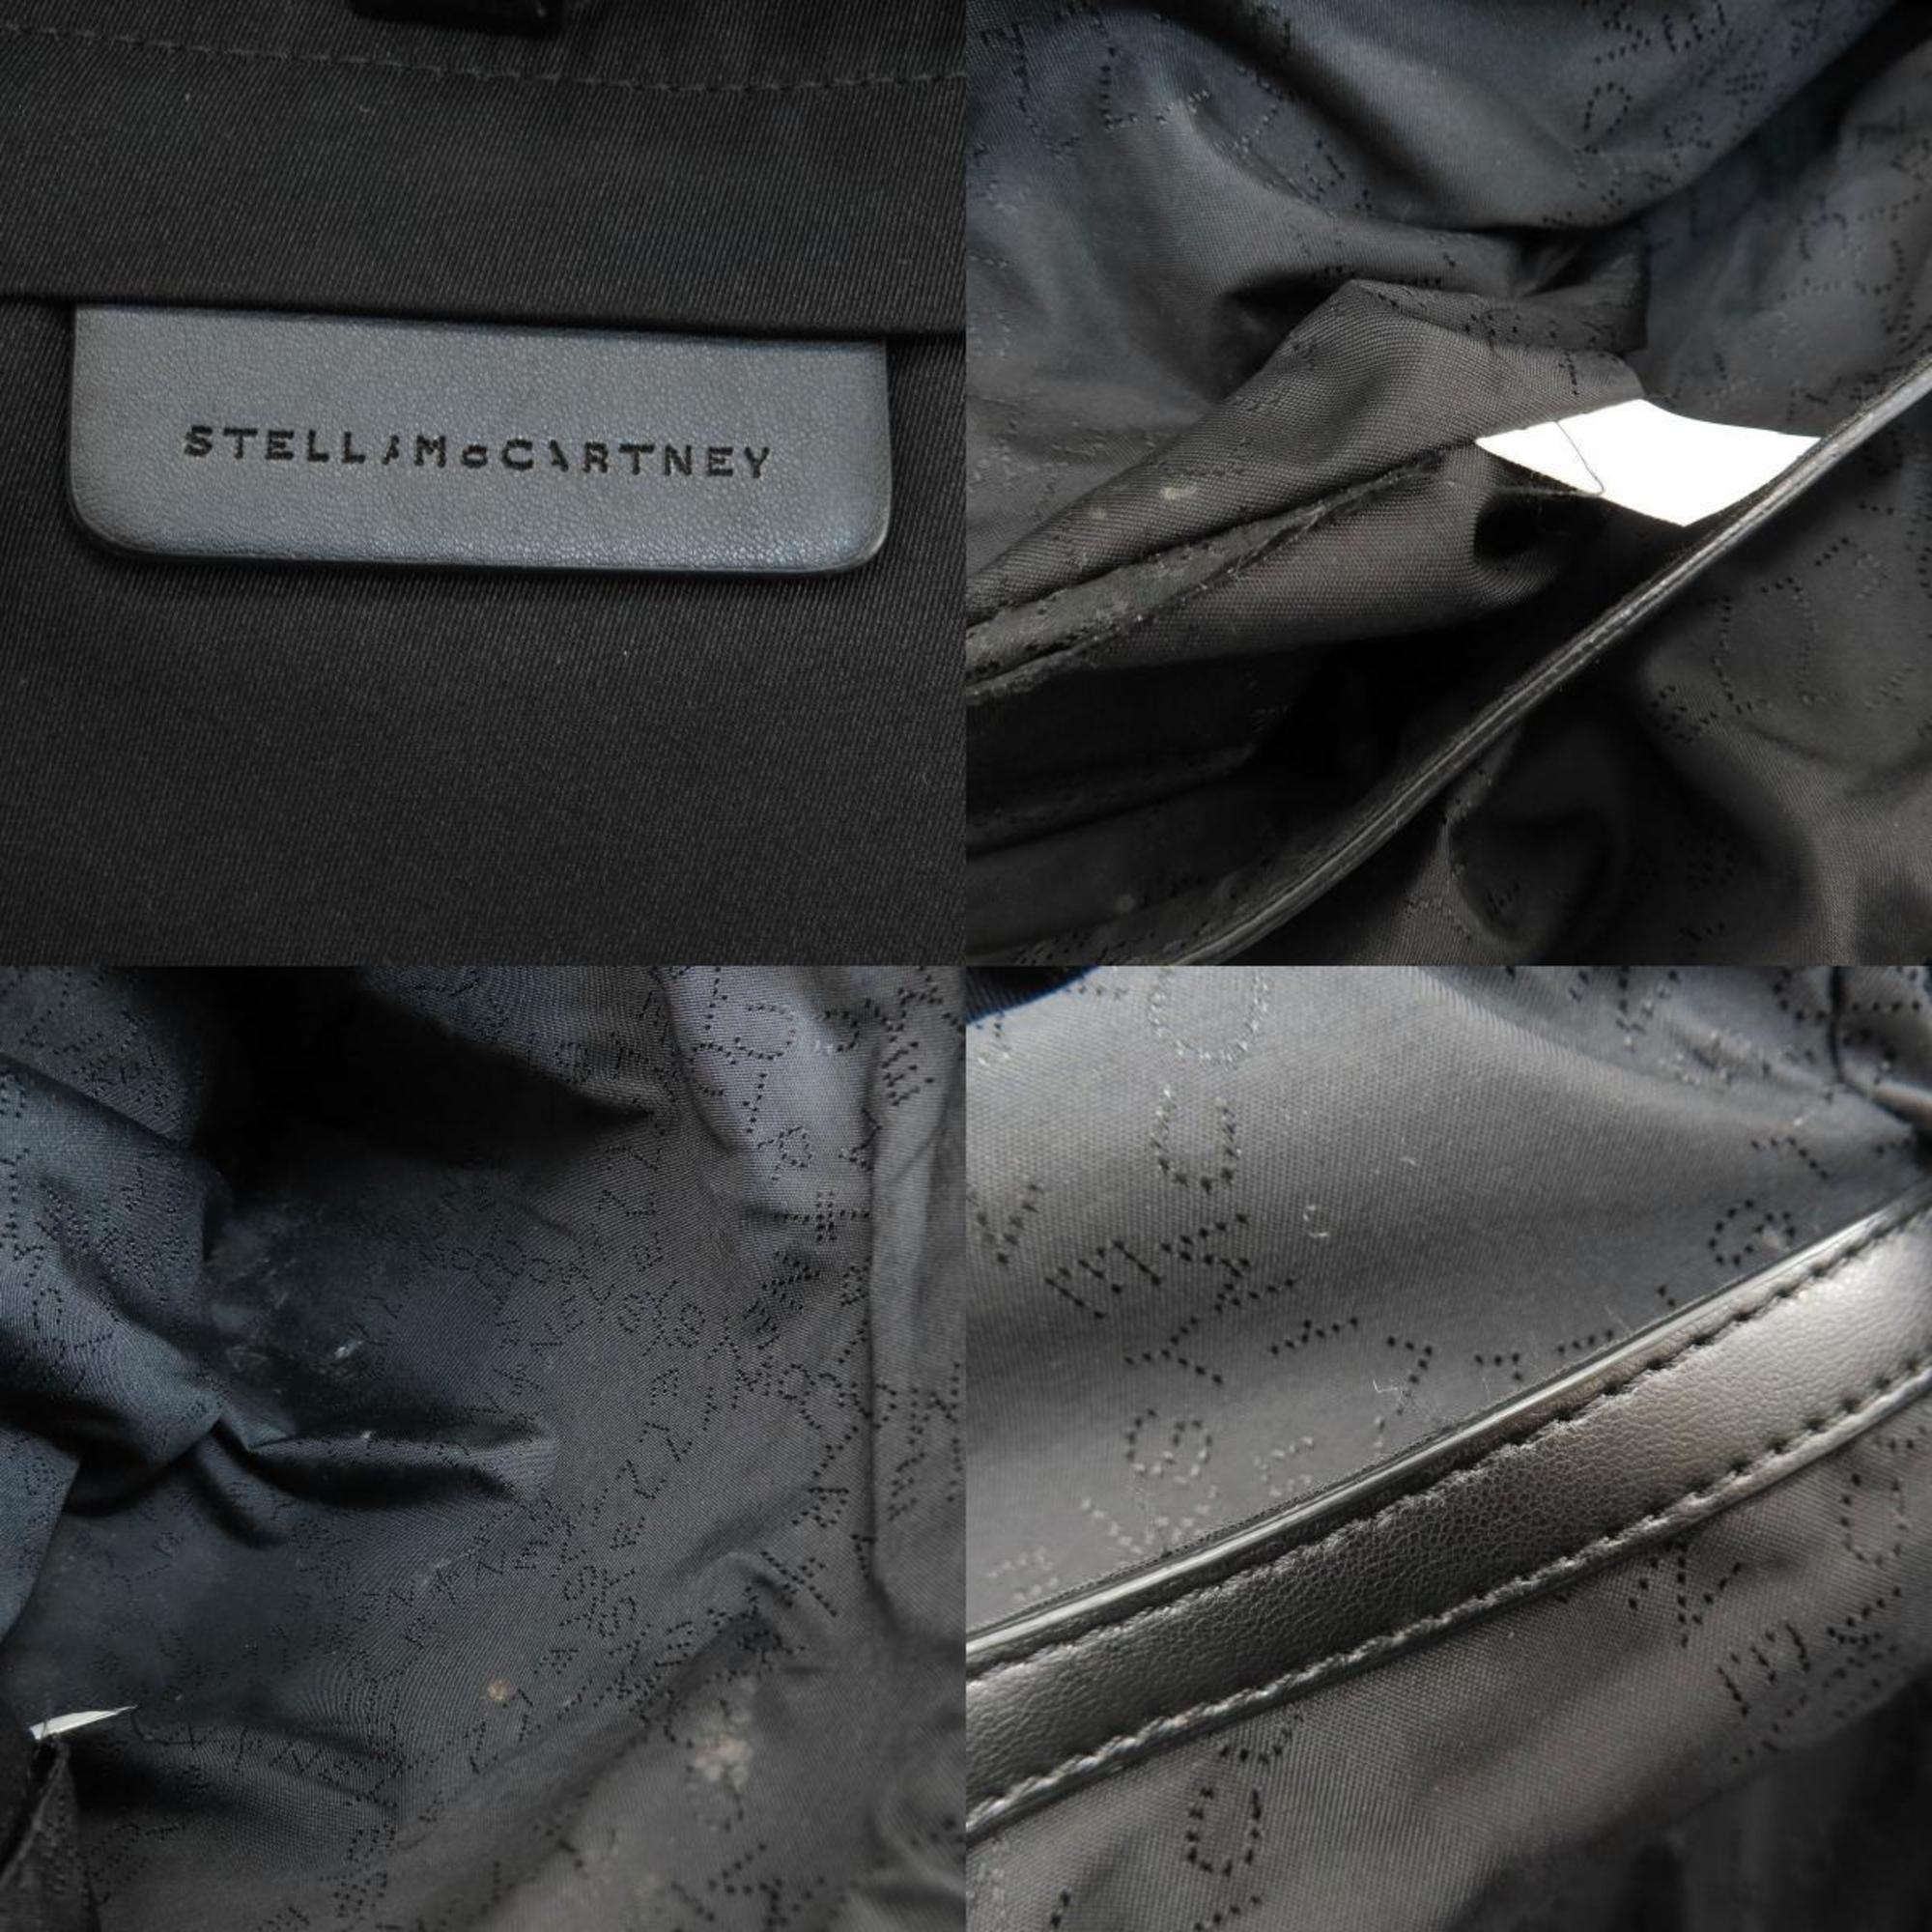 Stella McCartney Backpack/Daypack Nylon Material Women's